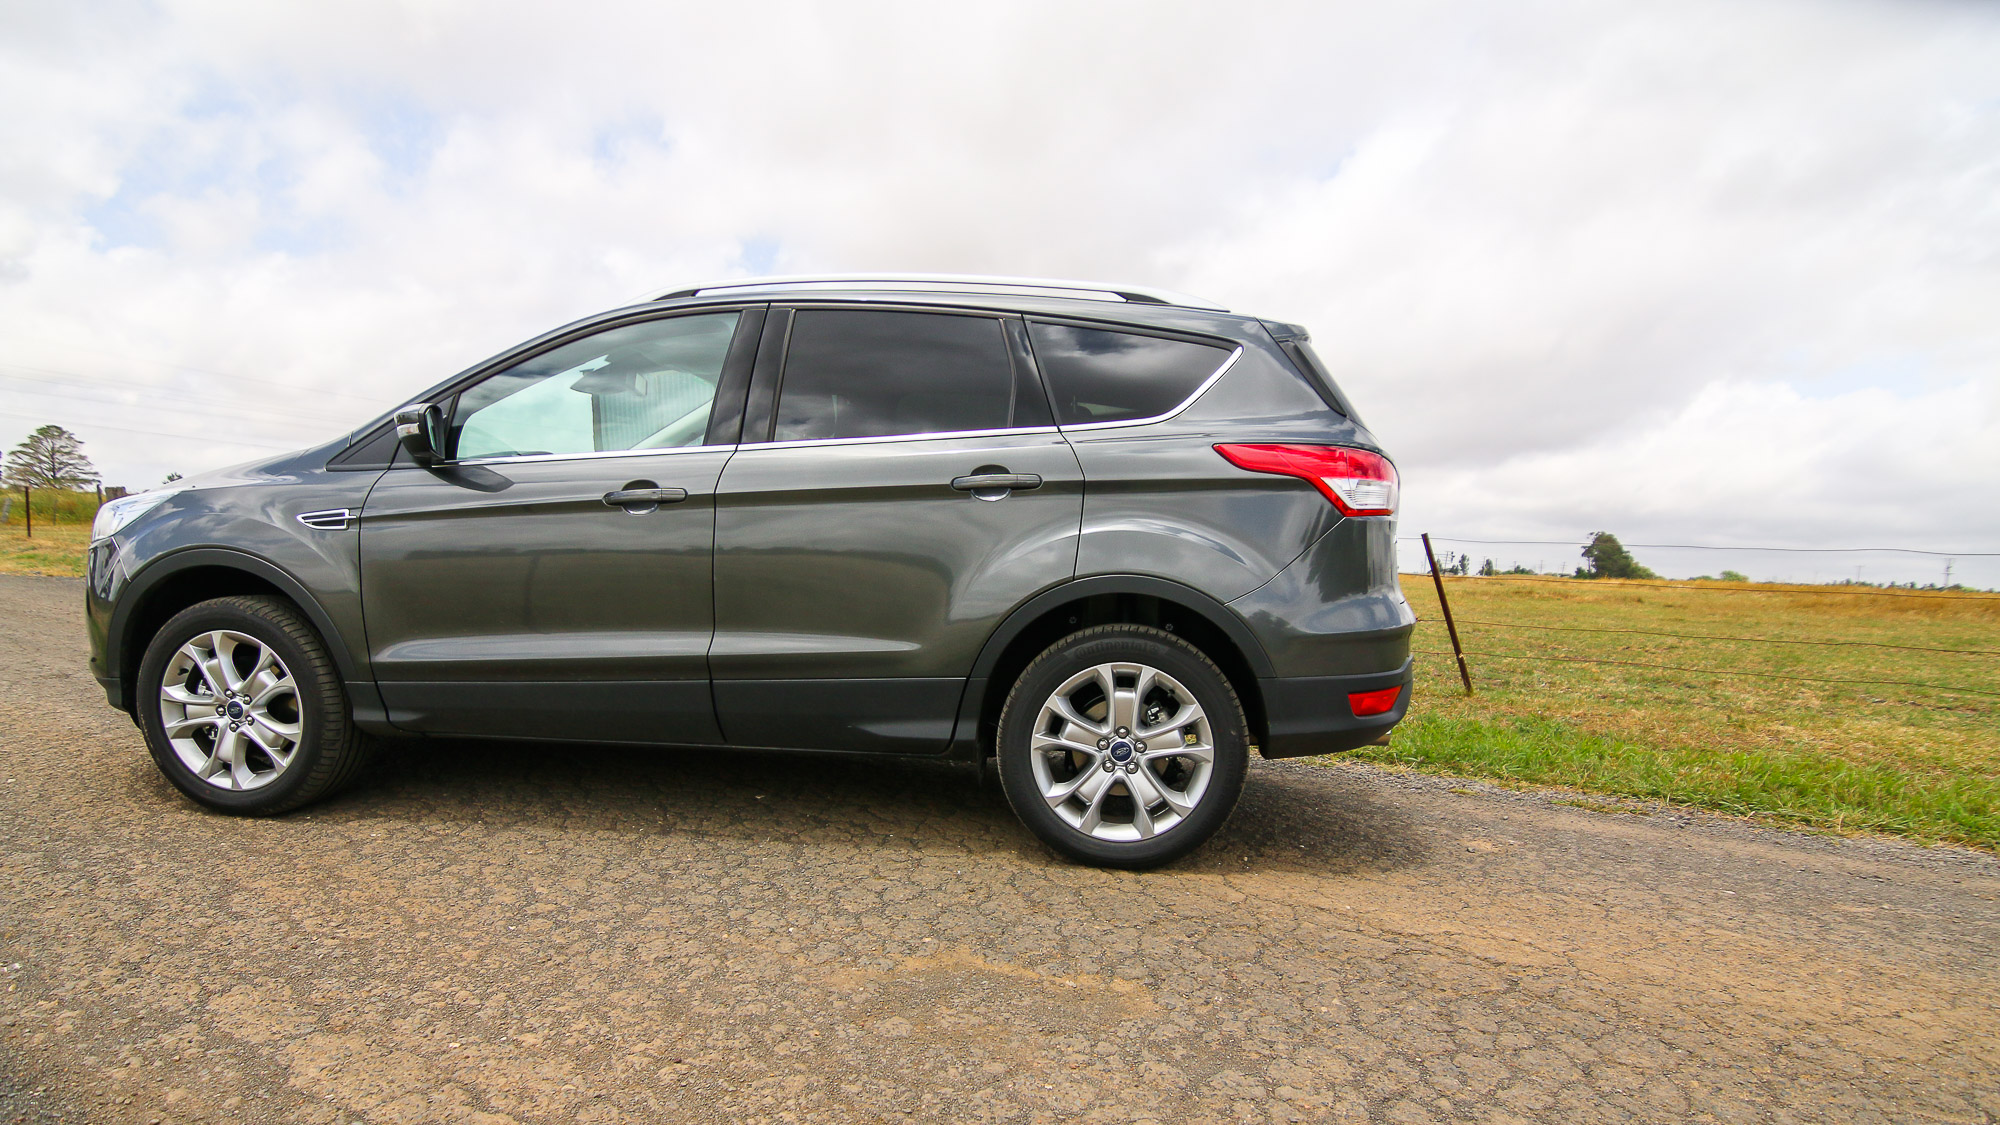 2015 Ford Kuga Review photos CarAdvice